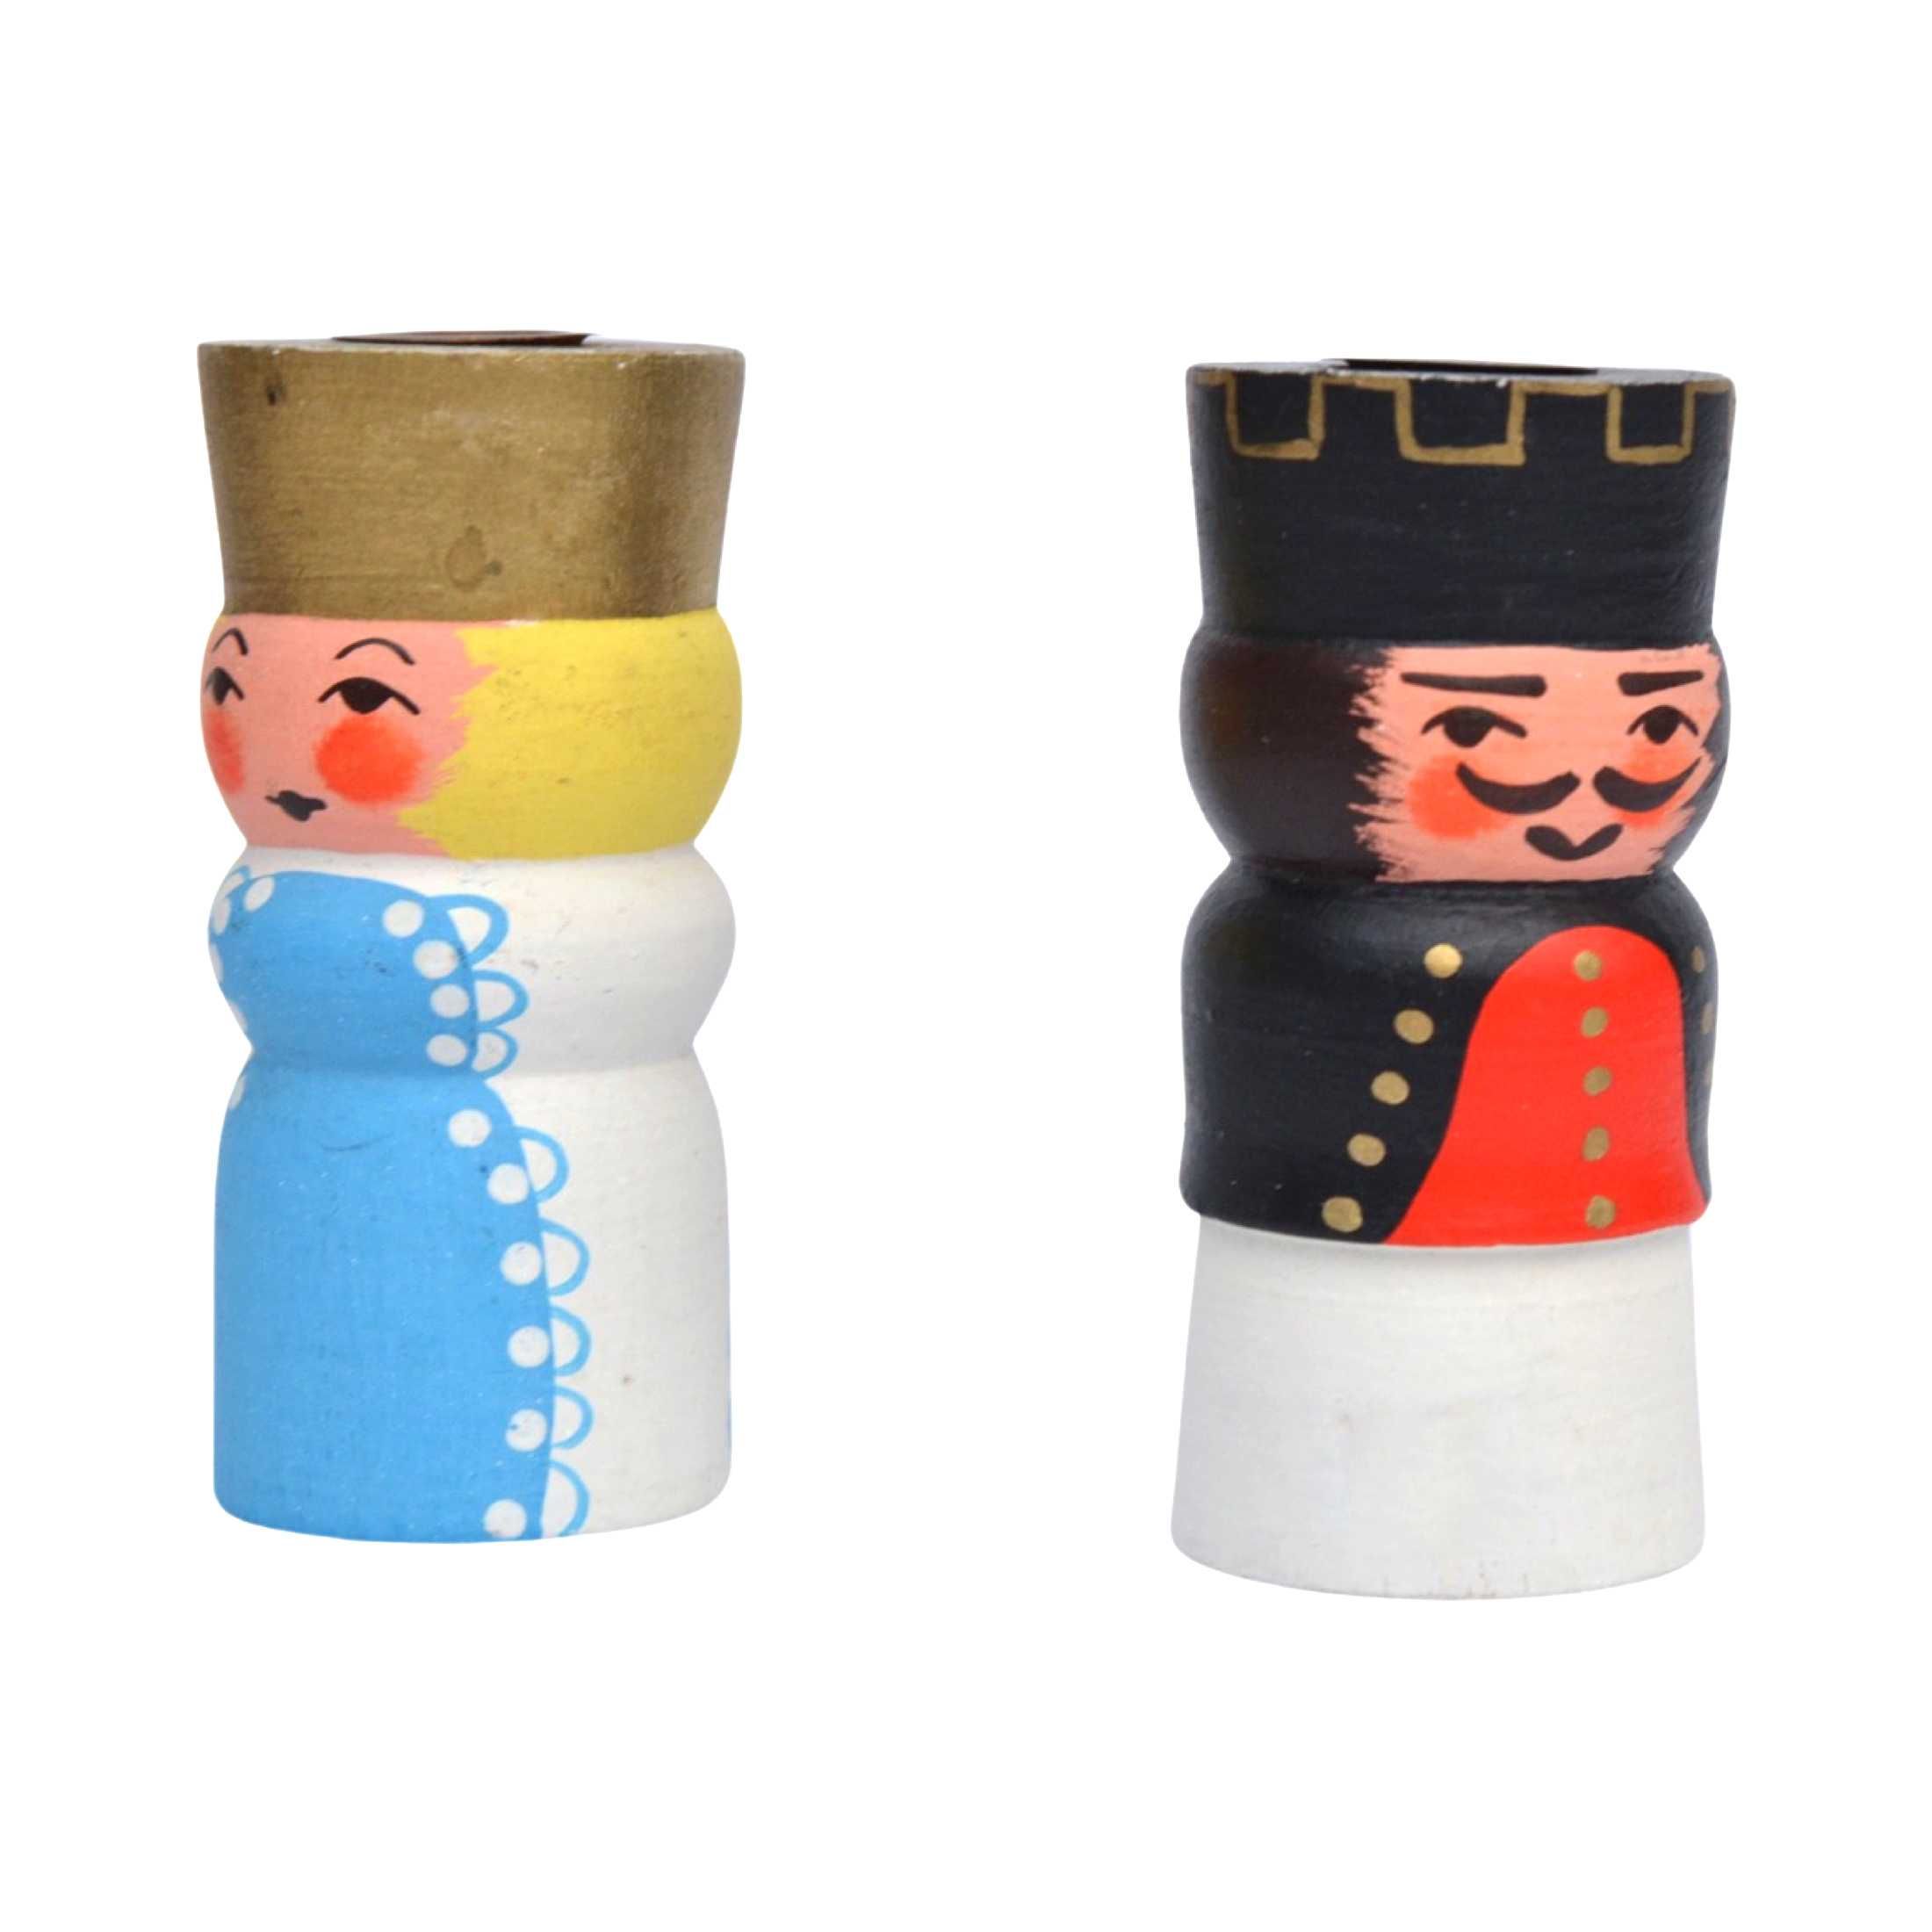 Para świeczników drewnianych, król i królowa, Niemcy lata 70.